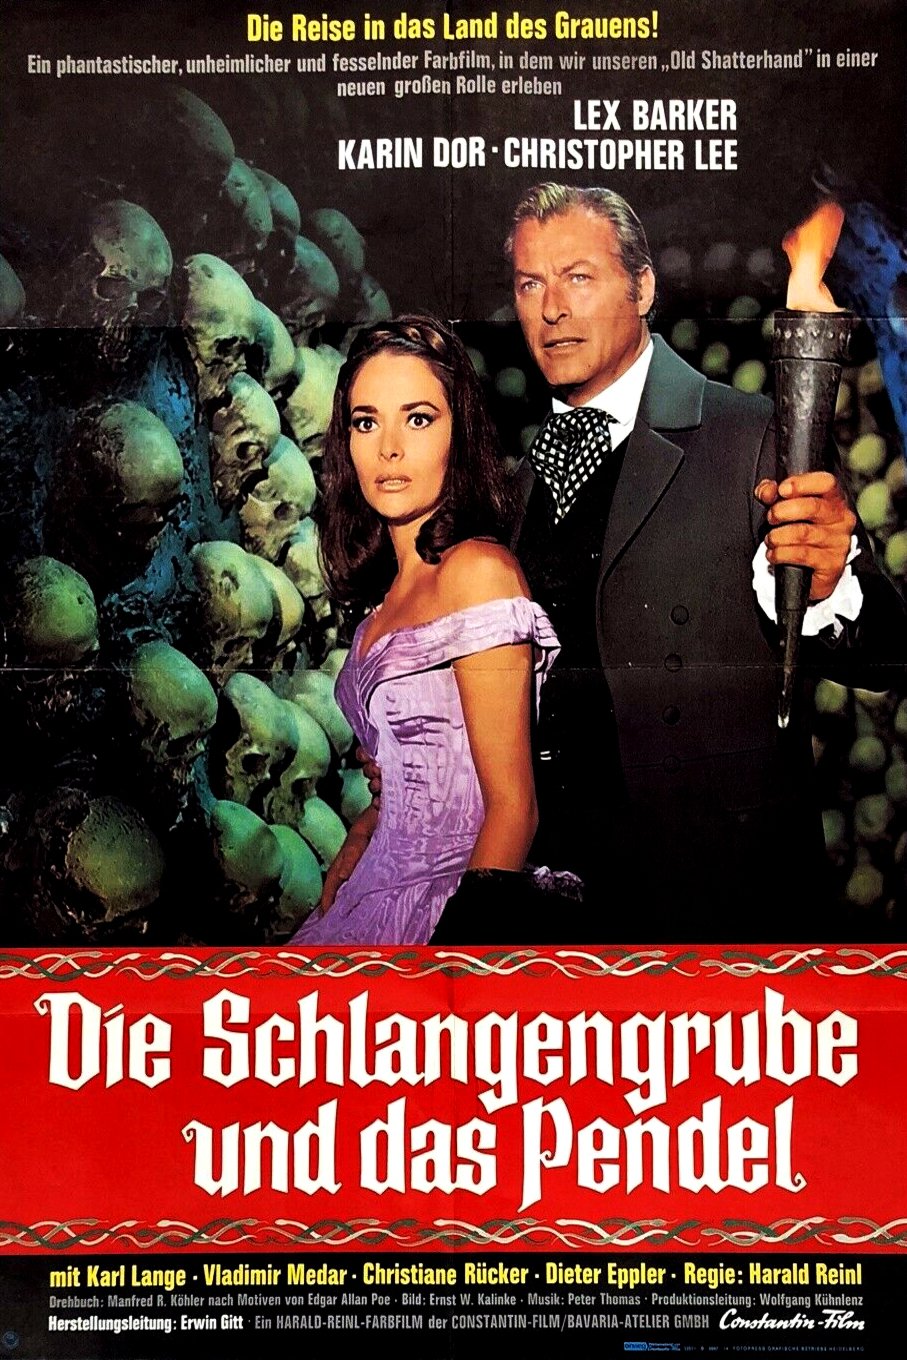 Poster of the movie Die Schlangengrube und das Pendel